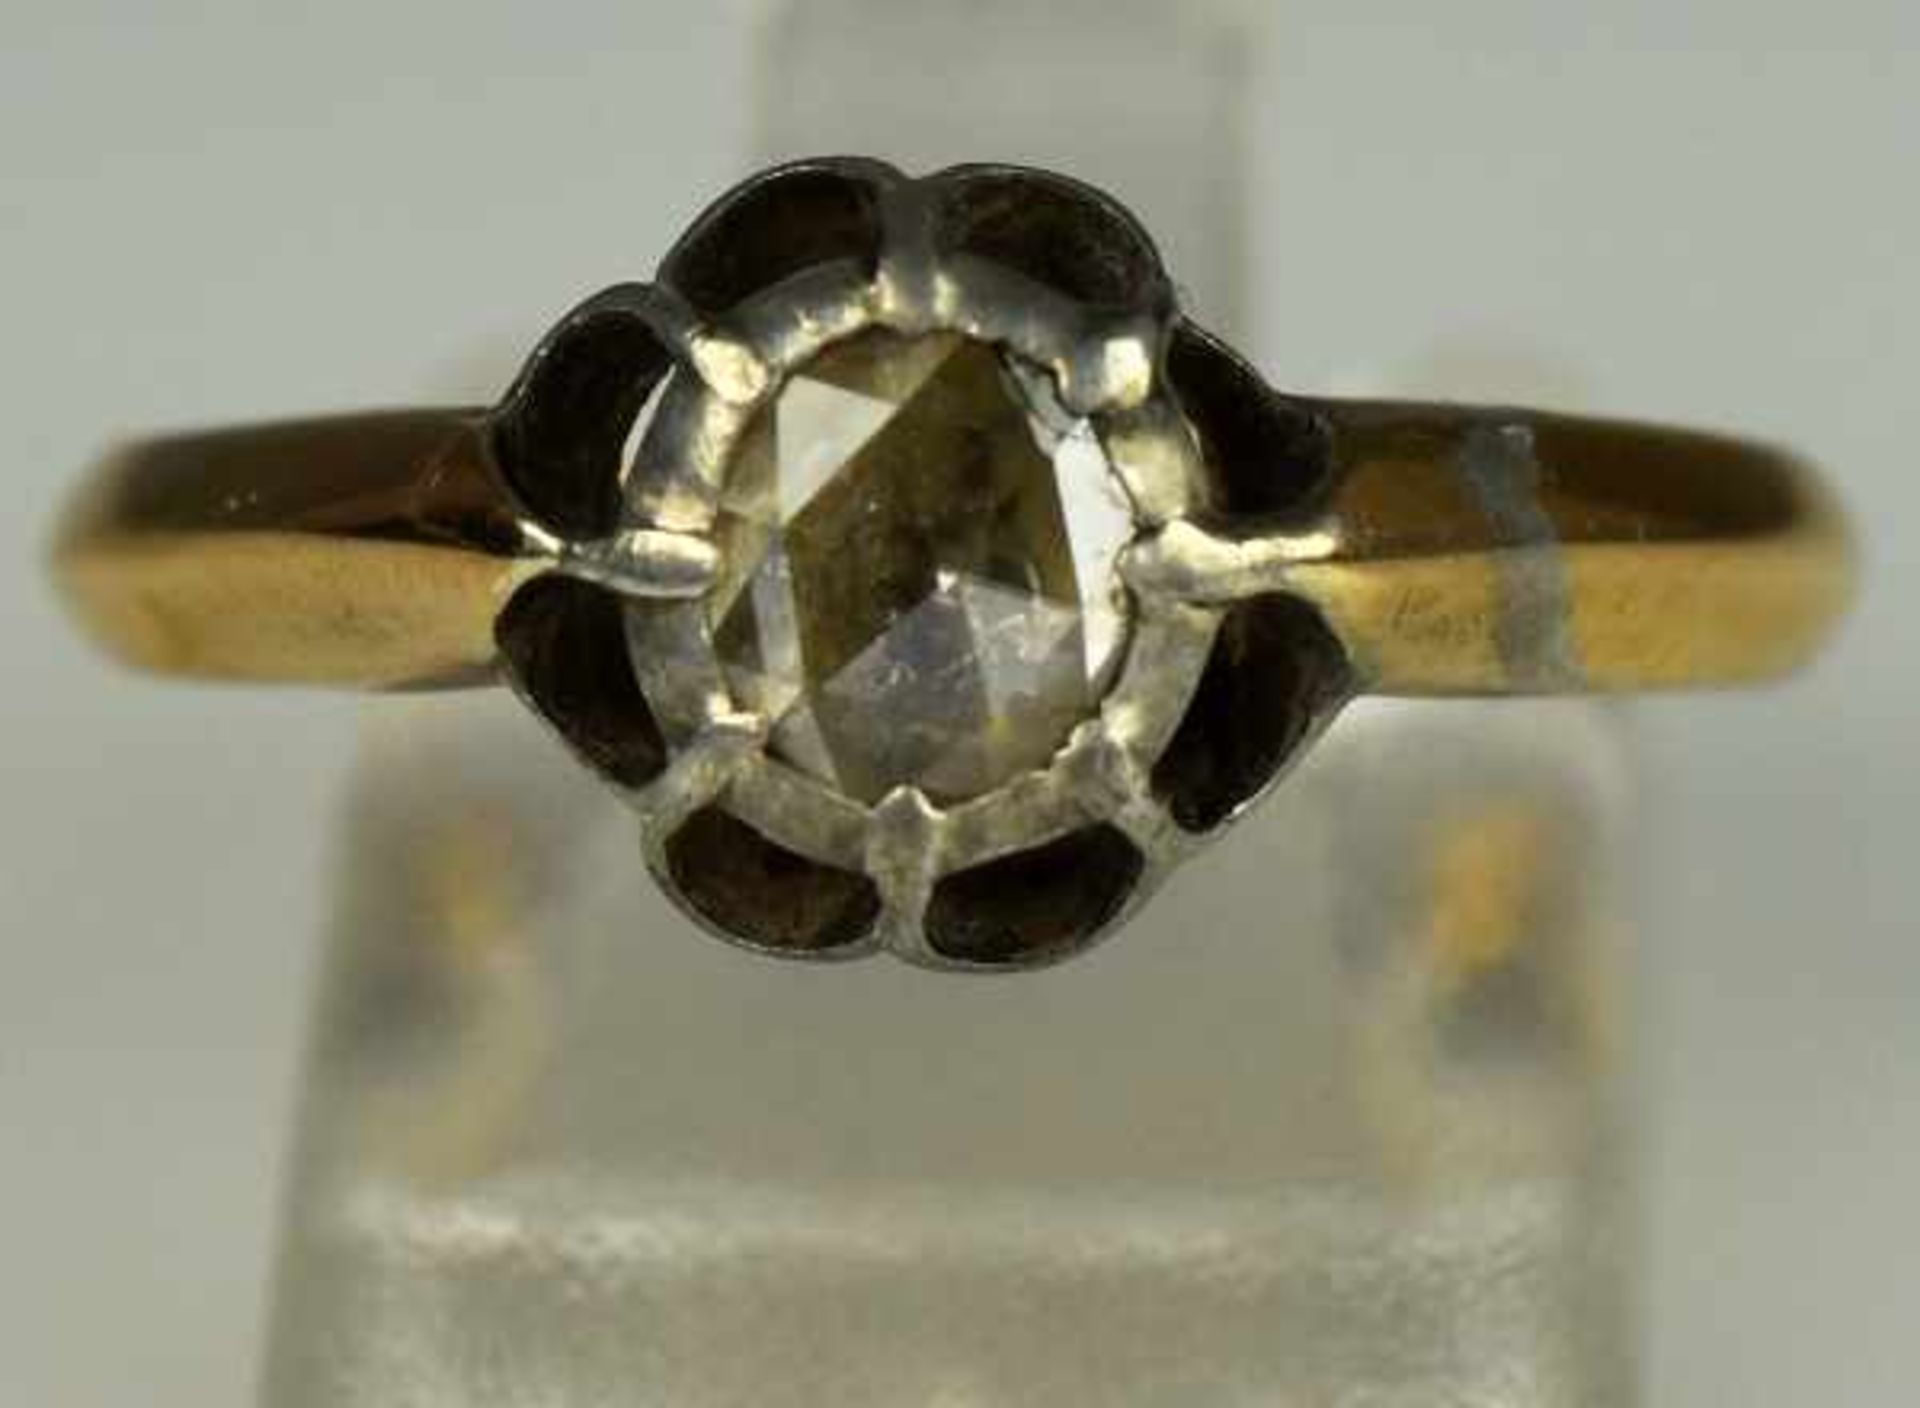 RING mit Rosendiamant um 0,5ct in seitlich durchbrochener Silberfassung, antik, 19.Jh., aufgelegt - Image 2 of 3